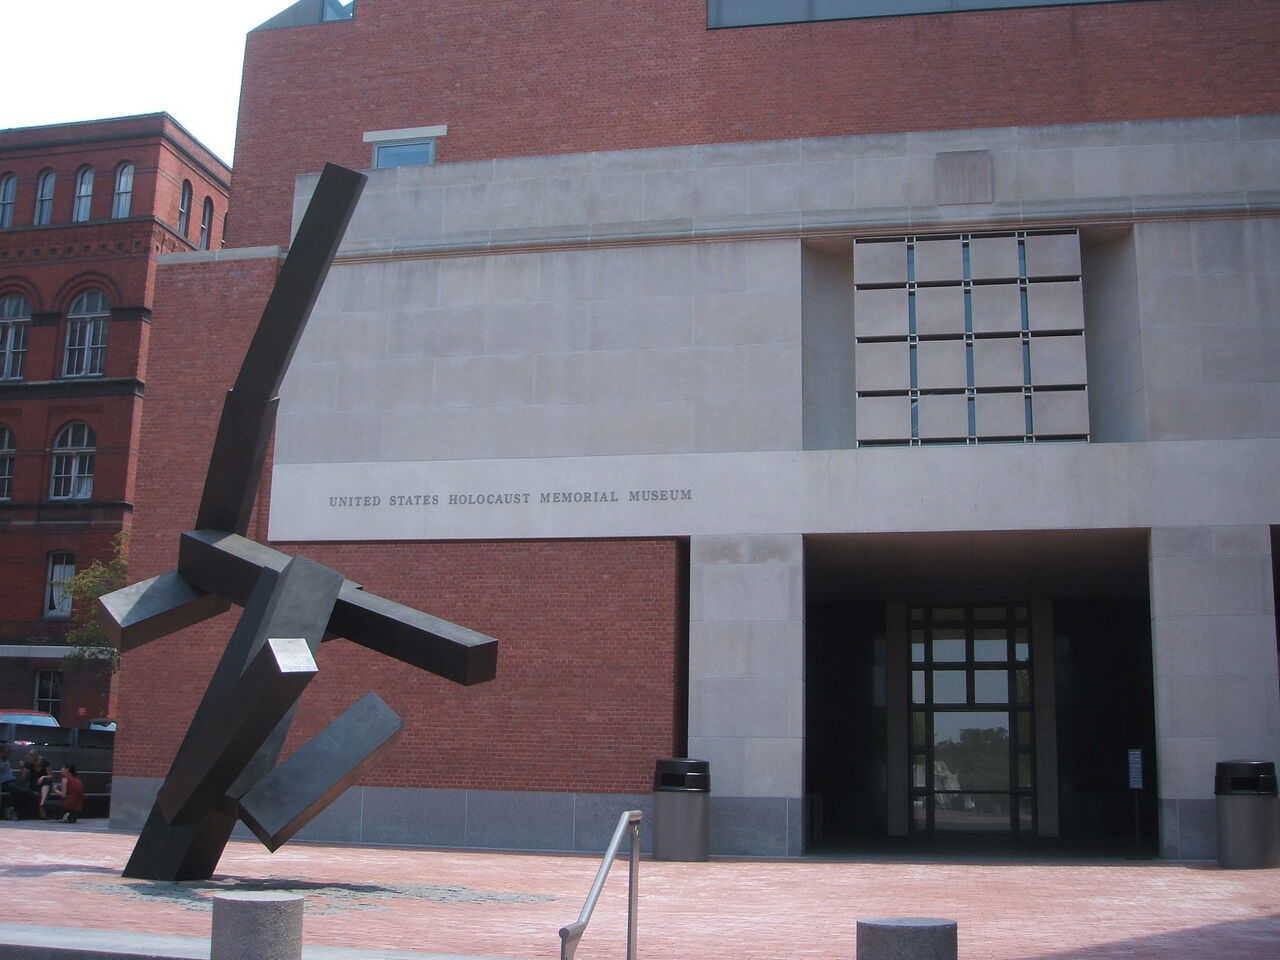 平和について考えさせられる美術館 ホロコースト記念博物館 United States Holocaust Memorial Museum 世界遺産マイスター Lucky の人生を楽しく生きるための海外旅行ブログ